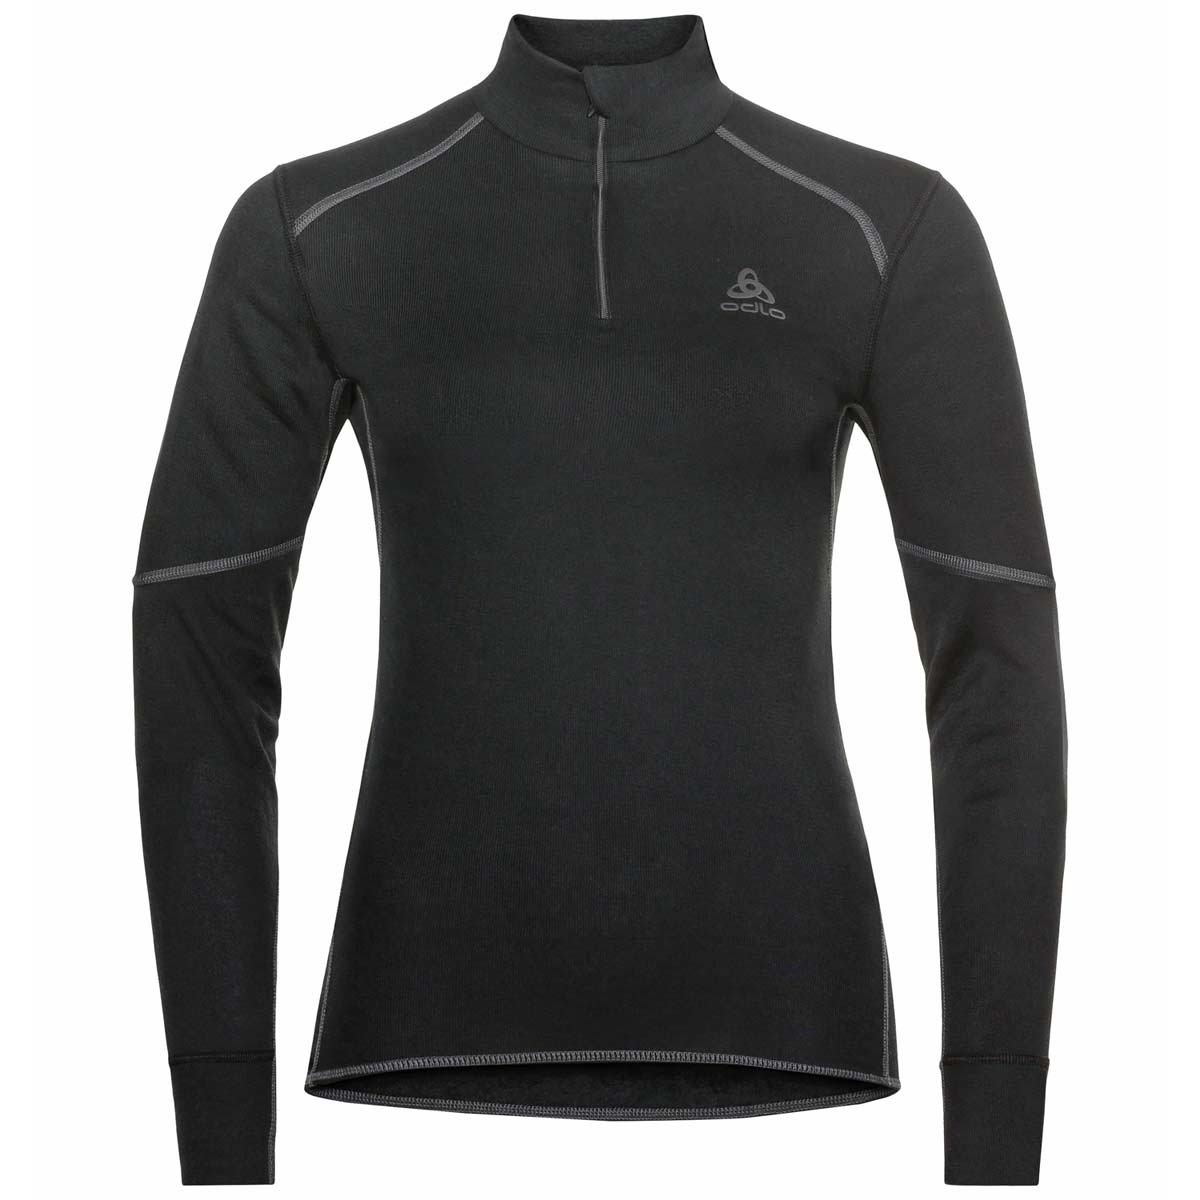 Bild von Odlo Active X-Warm Half-Zip Turtleneck Langarm-Unterhemd Damen - schwarz